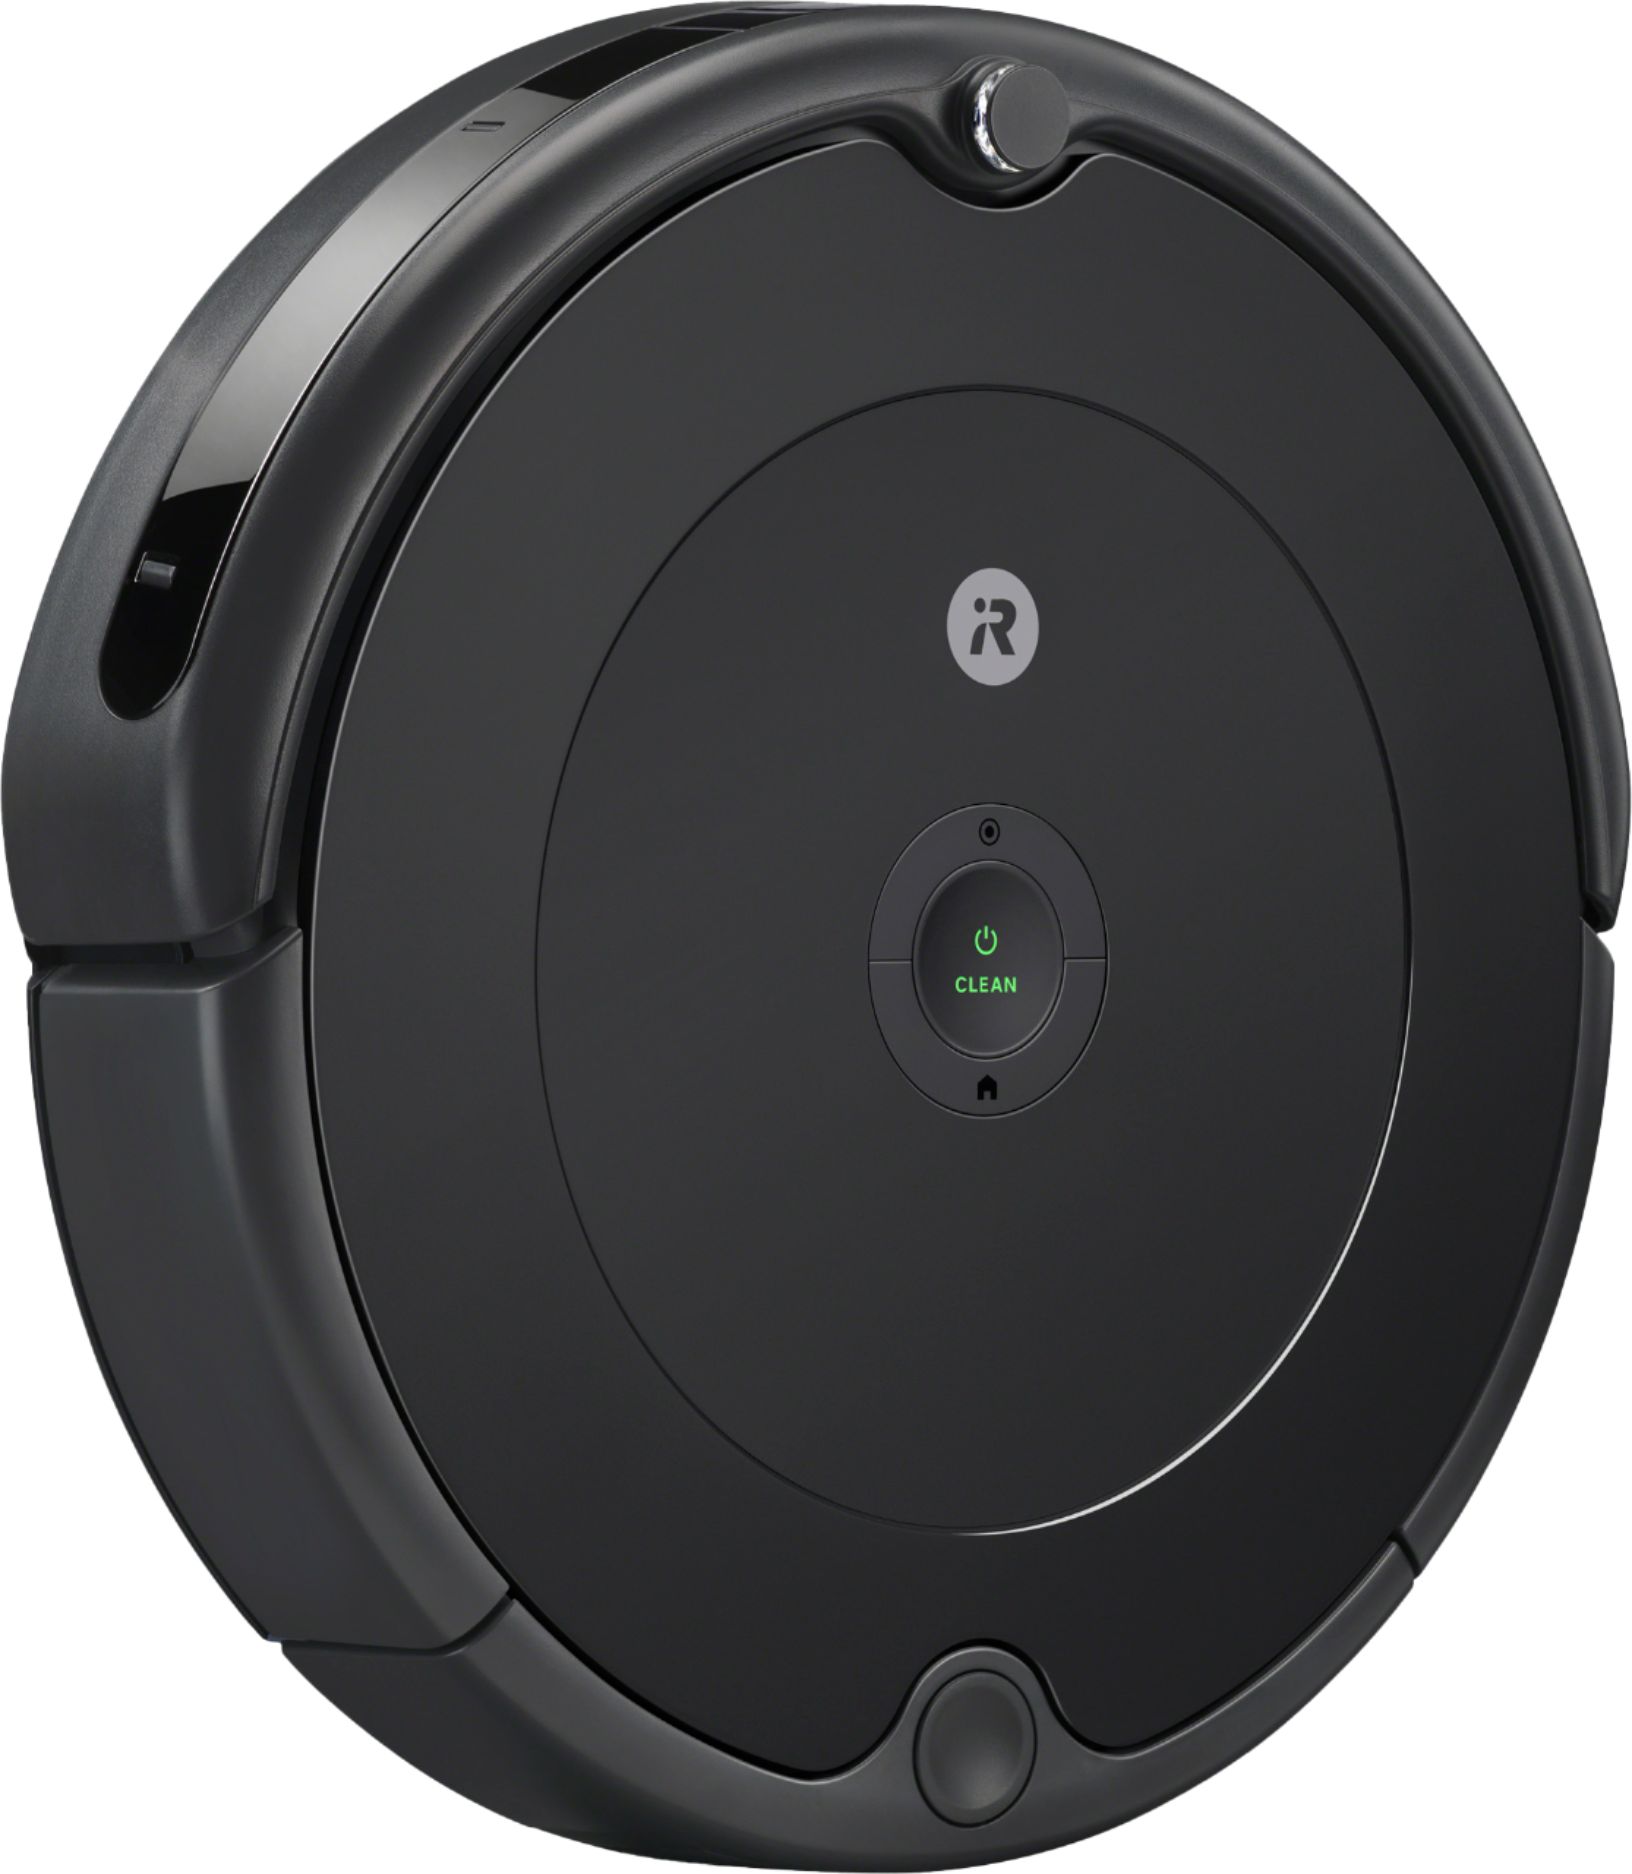 公式クリアランス iRobot Roomba 694 掃除機